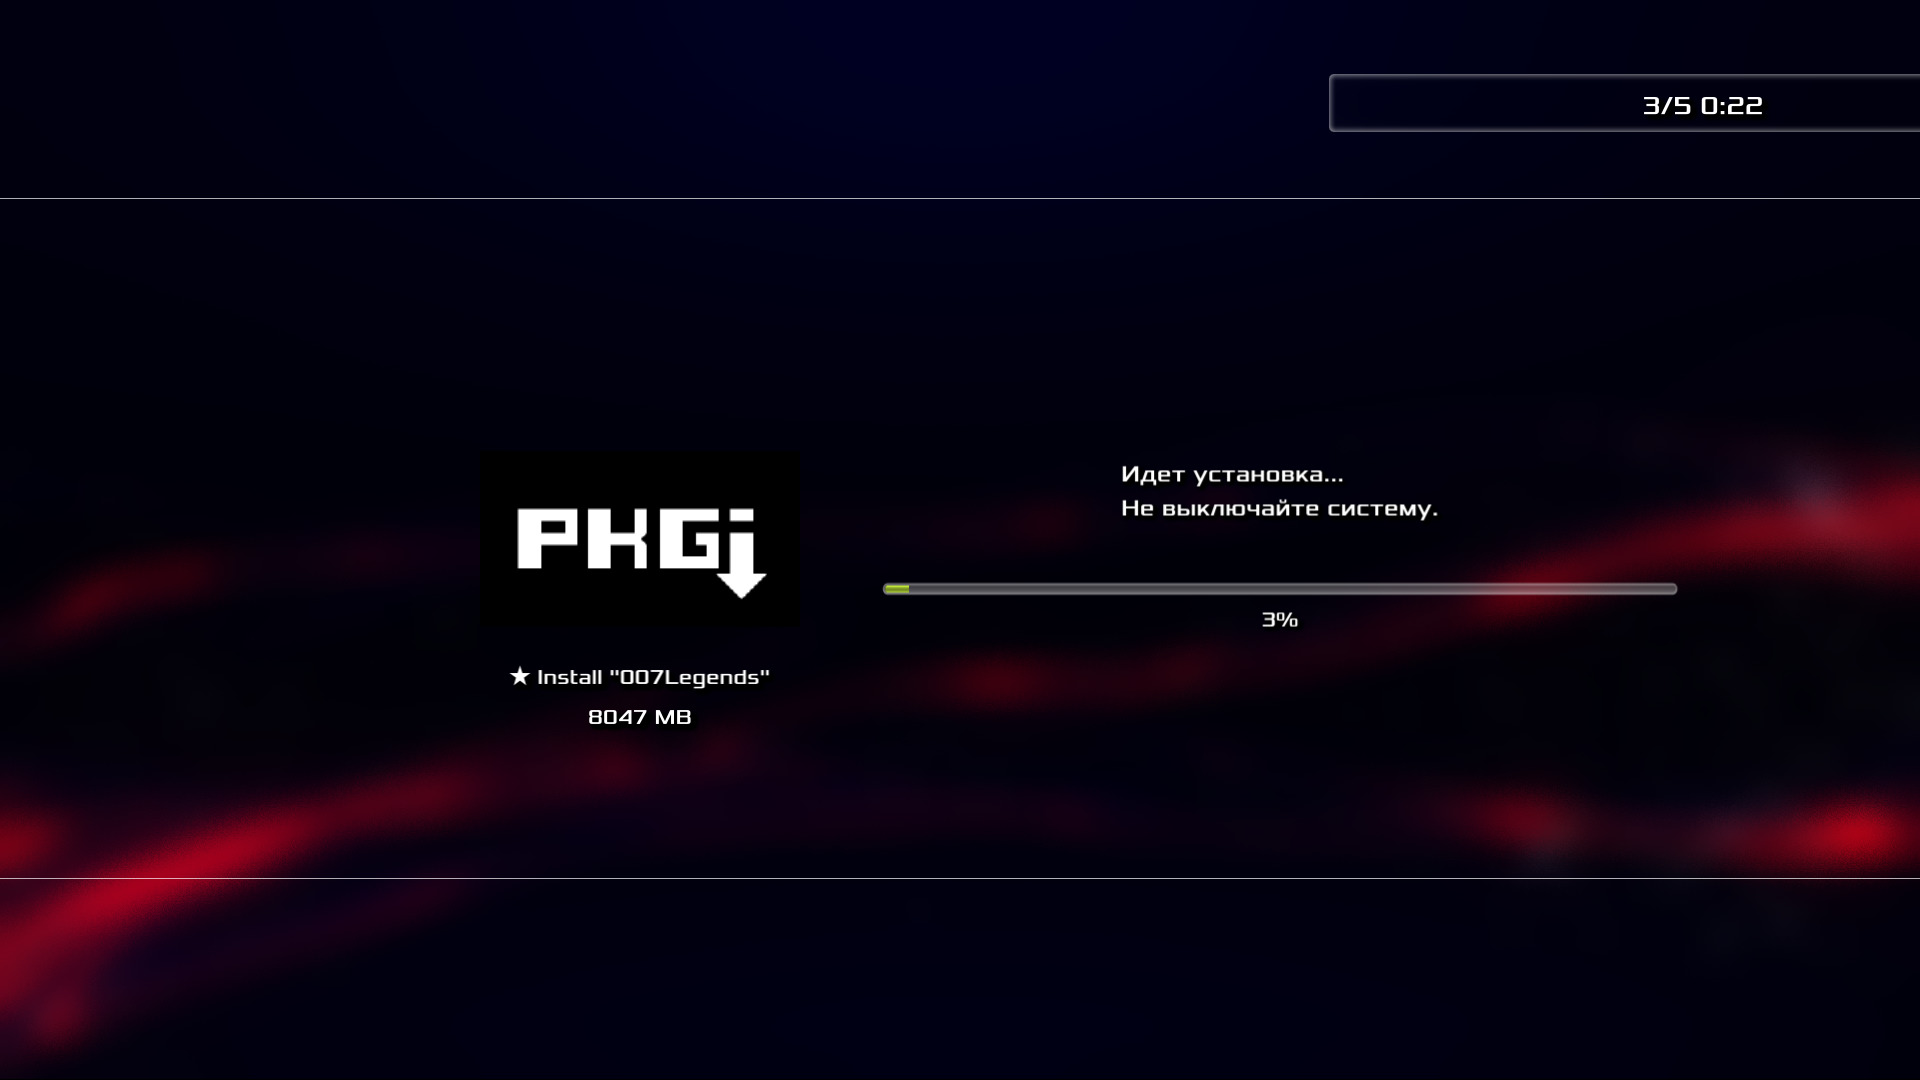 Игры pkgi ps3. Прошивка Hen ps3. PKGI ps3 Rus Mod. PKGI рус мод. Как удалить игры с пс3 прошитой Hen.